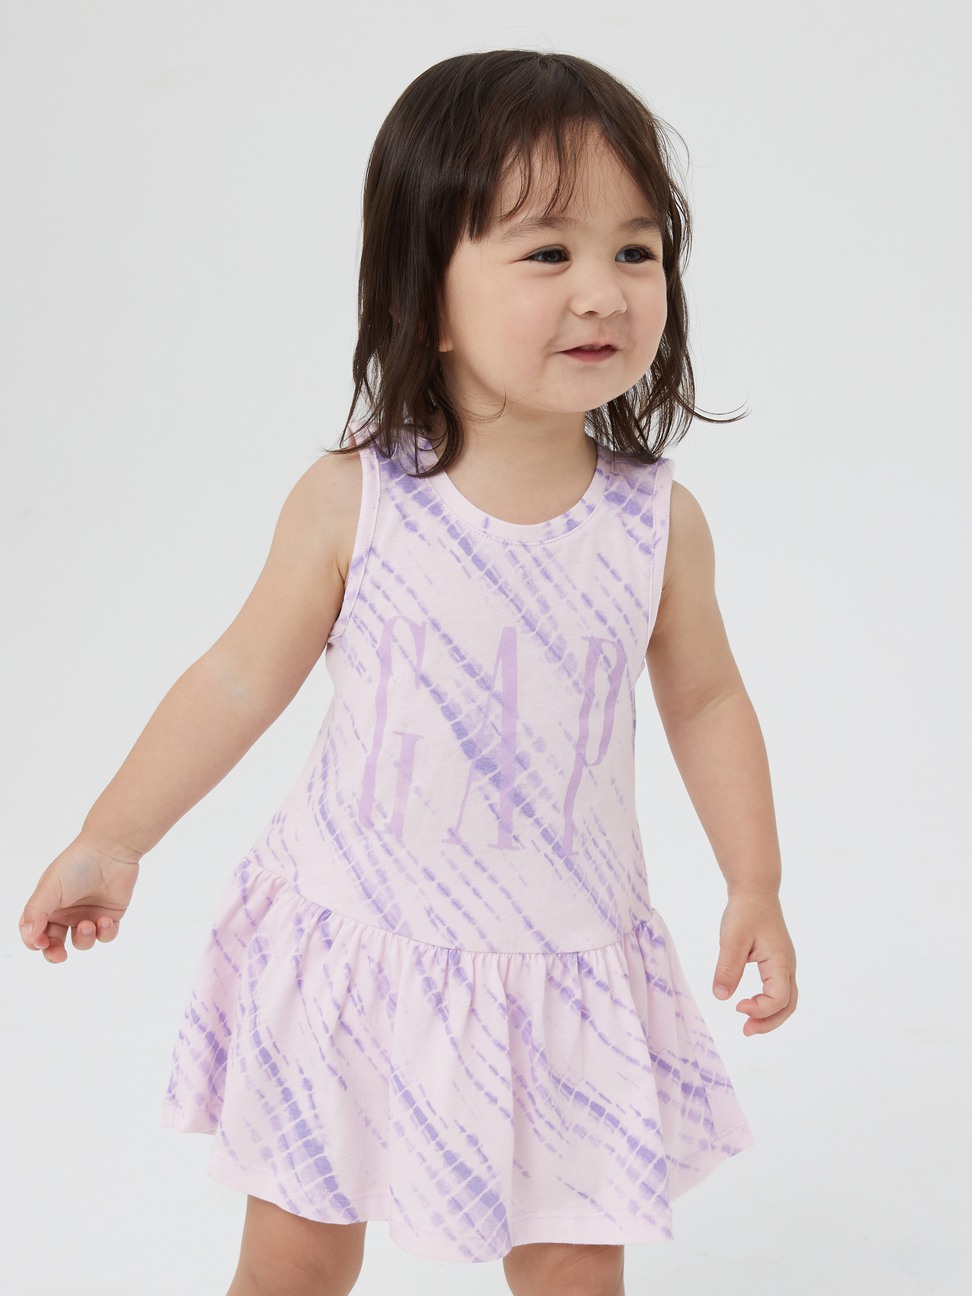 嬰兒裝|Logo純棉紮染背心洋裝家居套裝-淺紫色